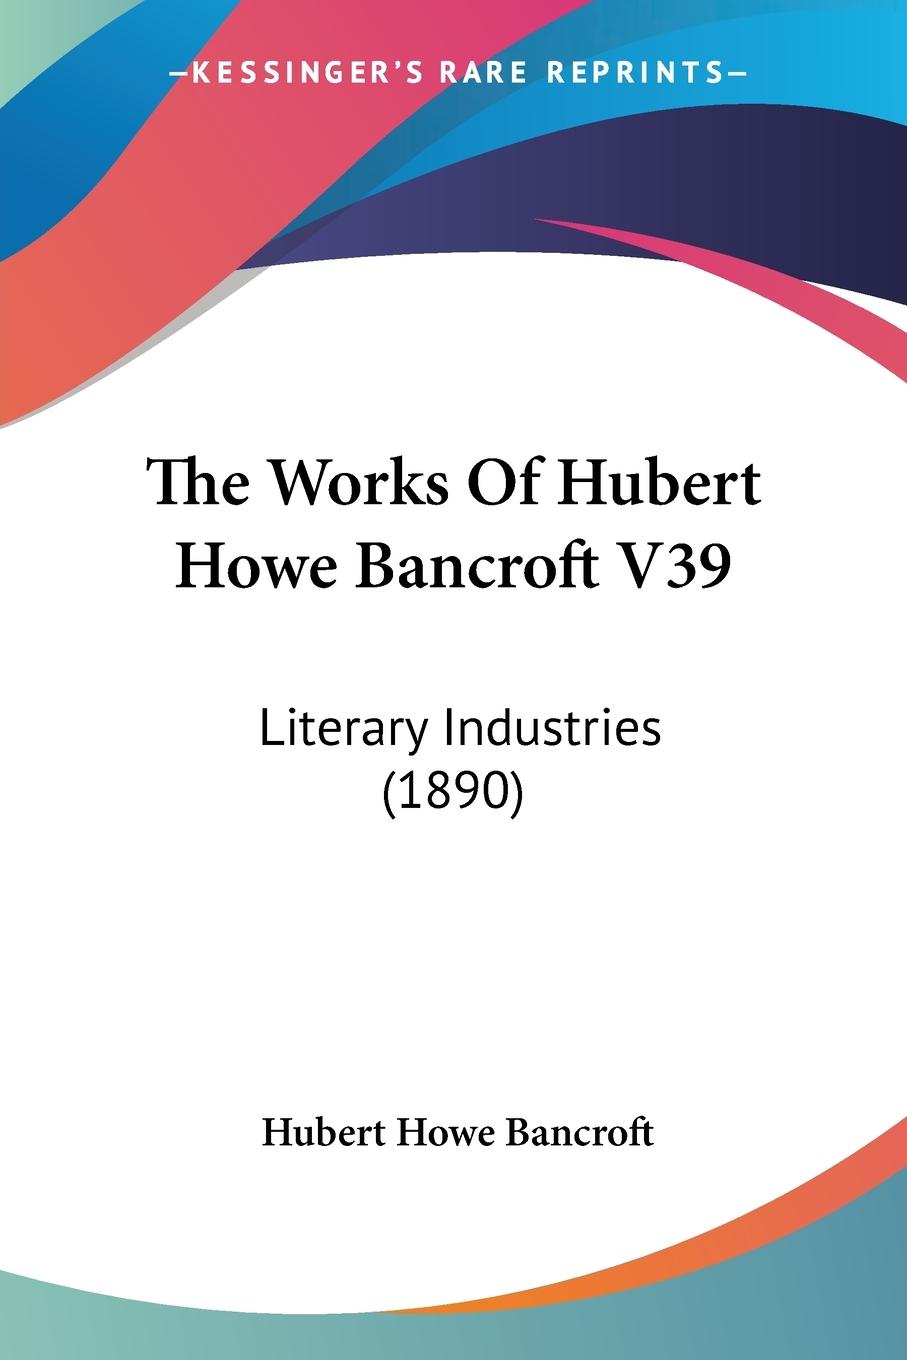 The Works Of Hubert Howe Bancroft V39 - Bancroft, Hubert Howe